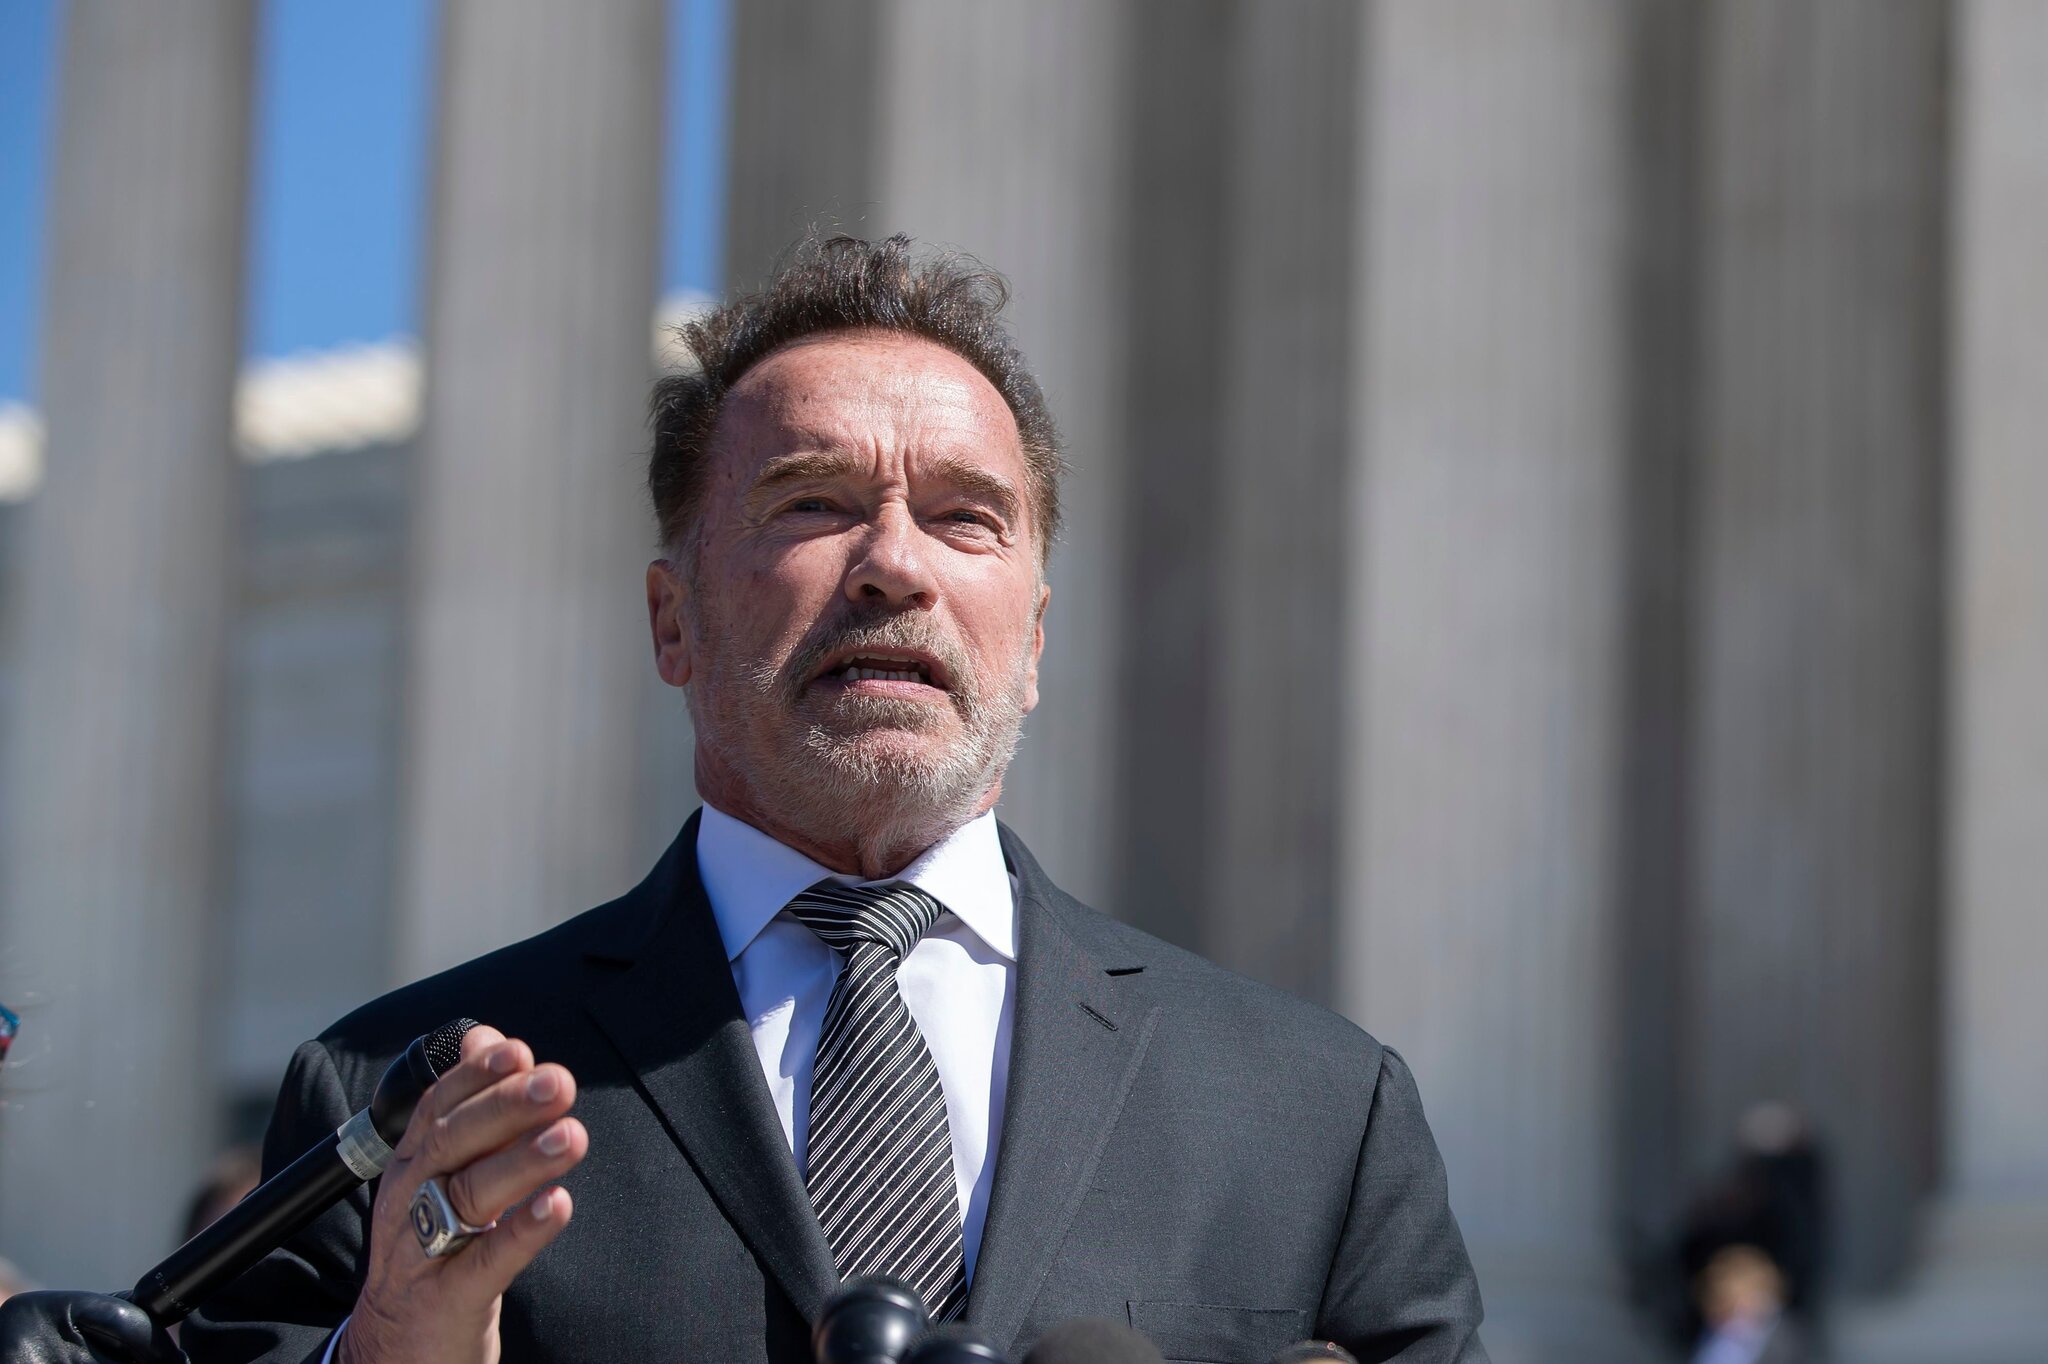 Arnold Schwarzenegger tặng 25 căn nhà cho cựu chiến binh